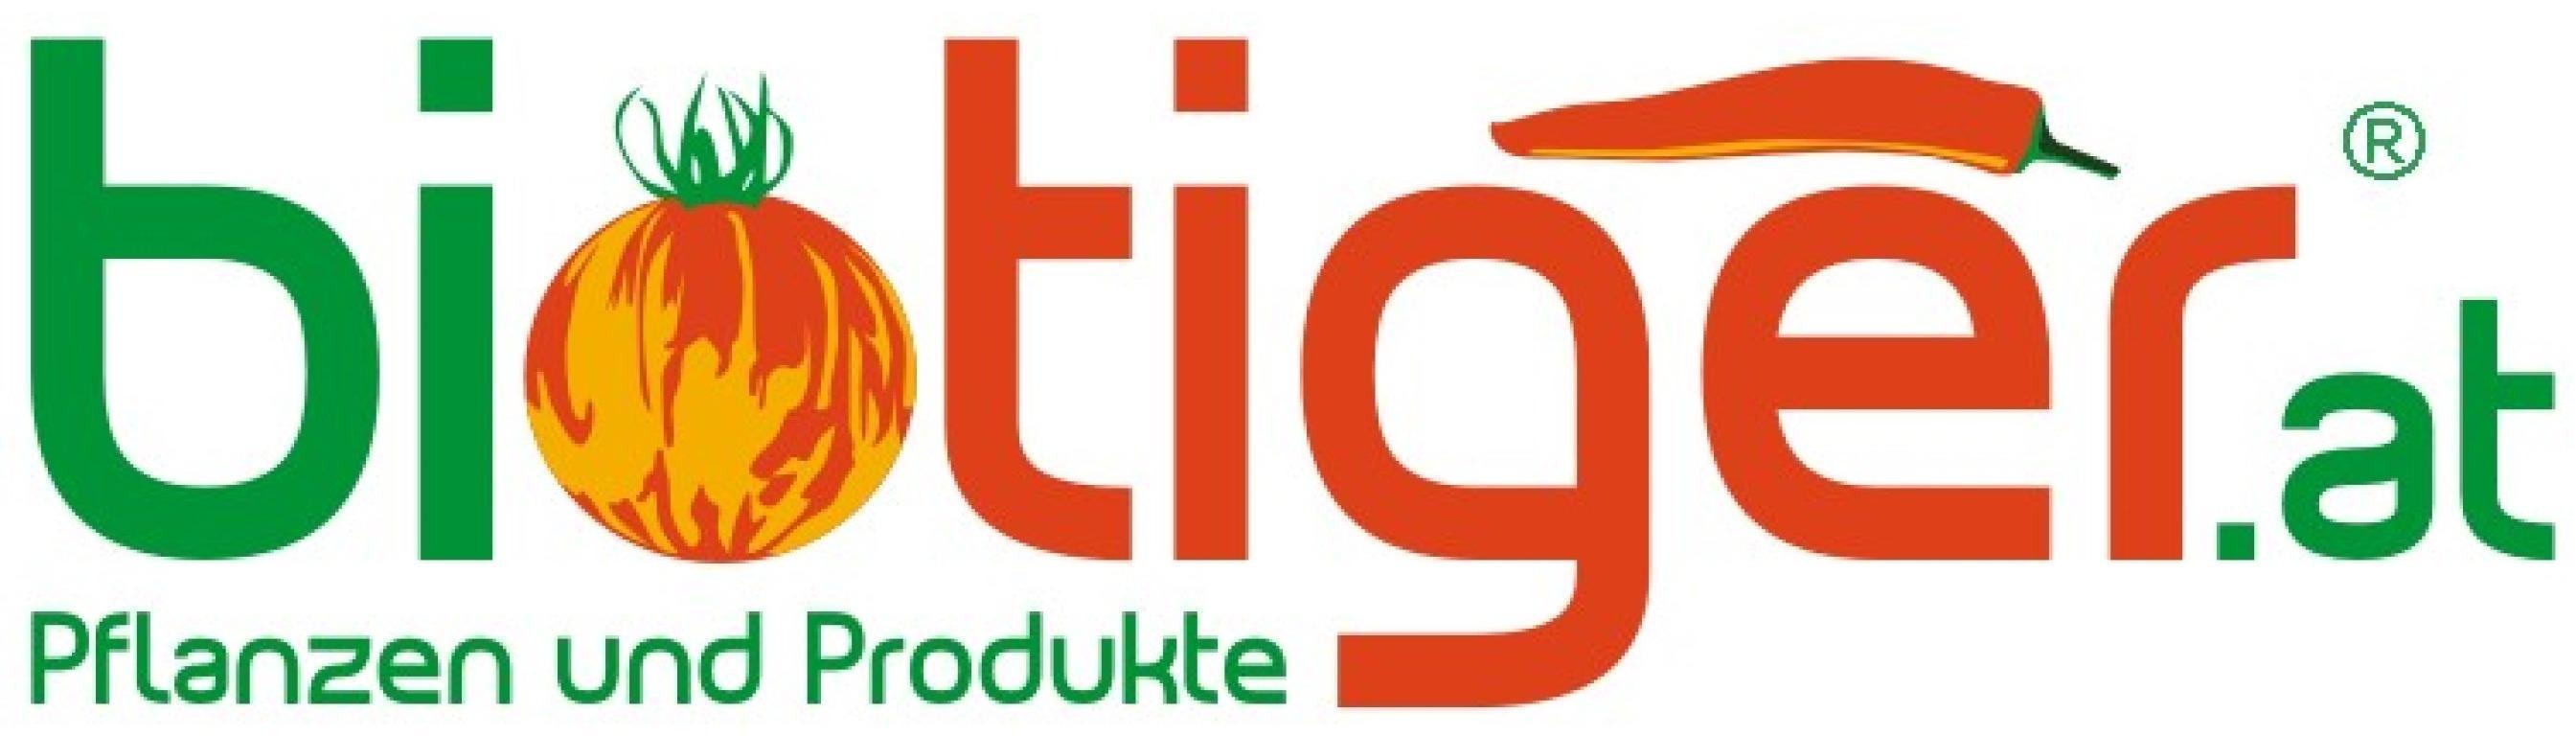 Logo biotiger